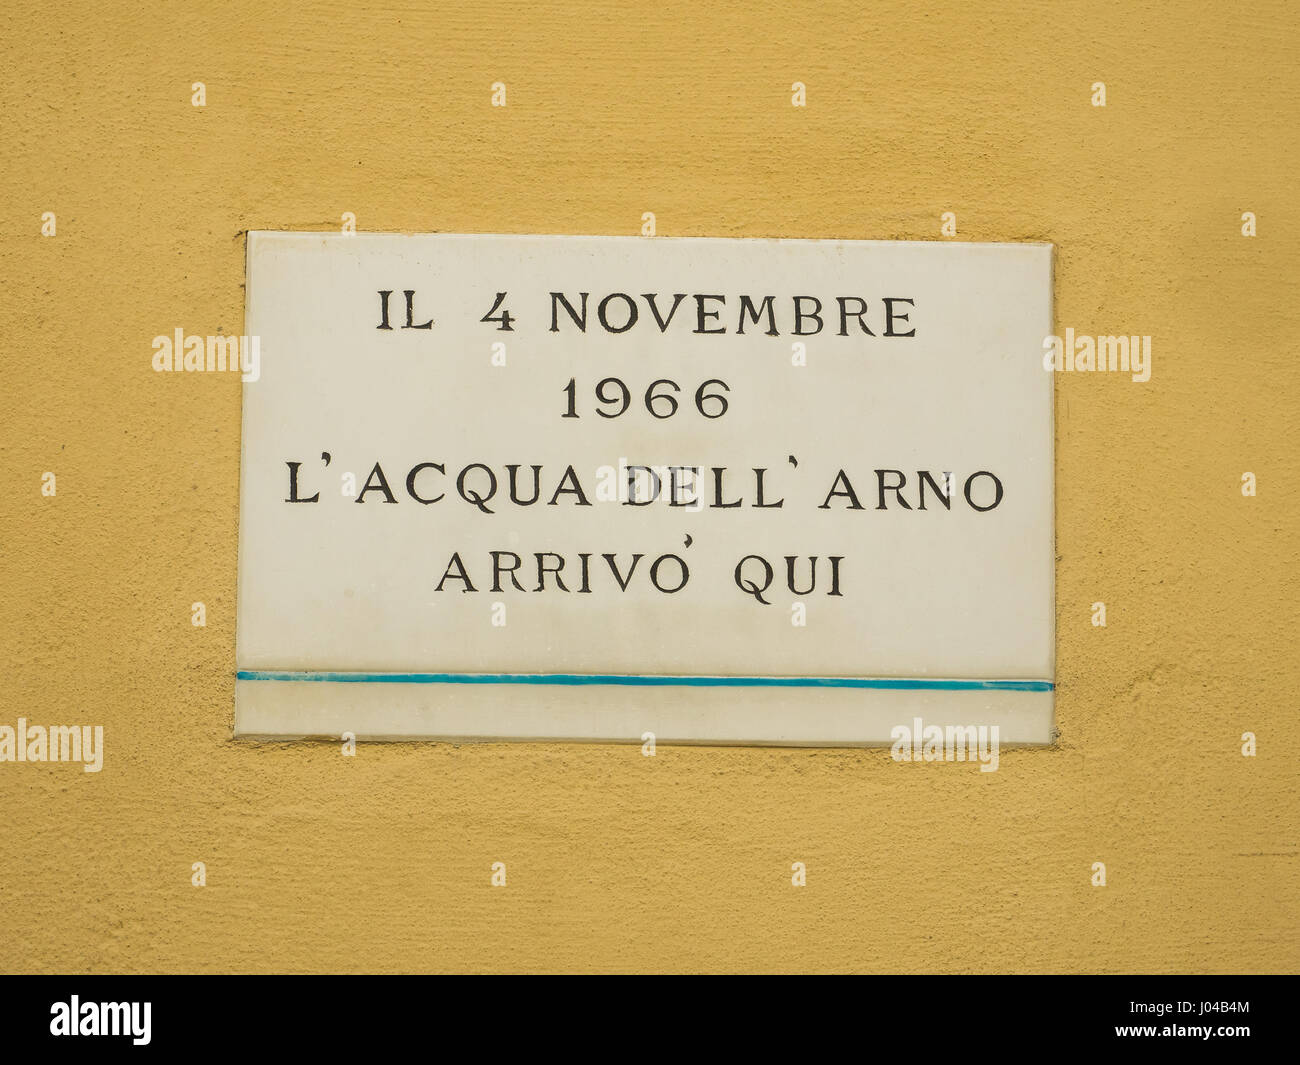 Los niveles de inundación del río Arno, que alcanzó el 4 de noviembre de 1966 (6,7 m/22 pies) en el centro de Florencia, Toscana, Italia Foto de stock